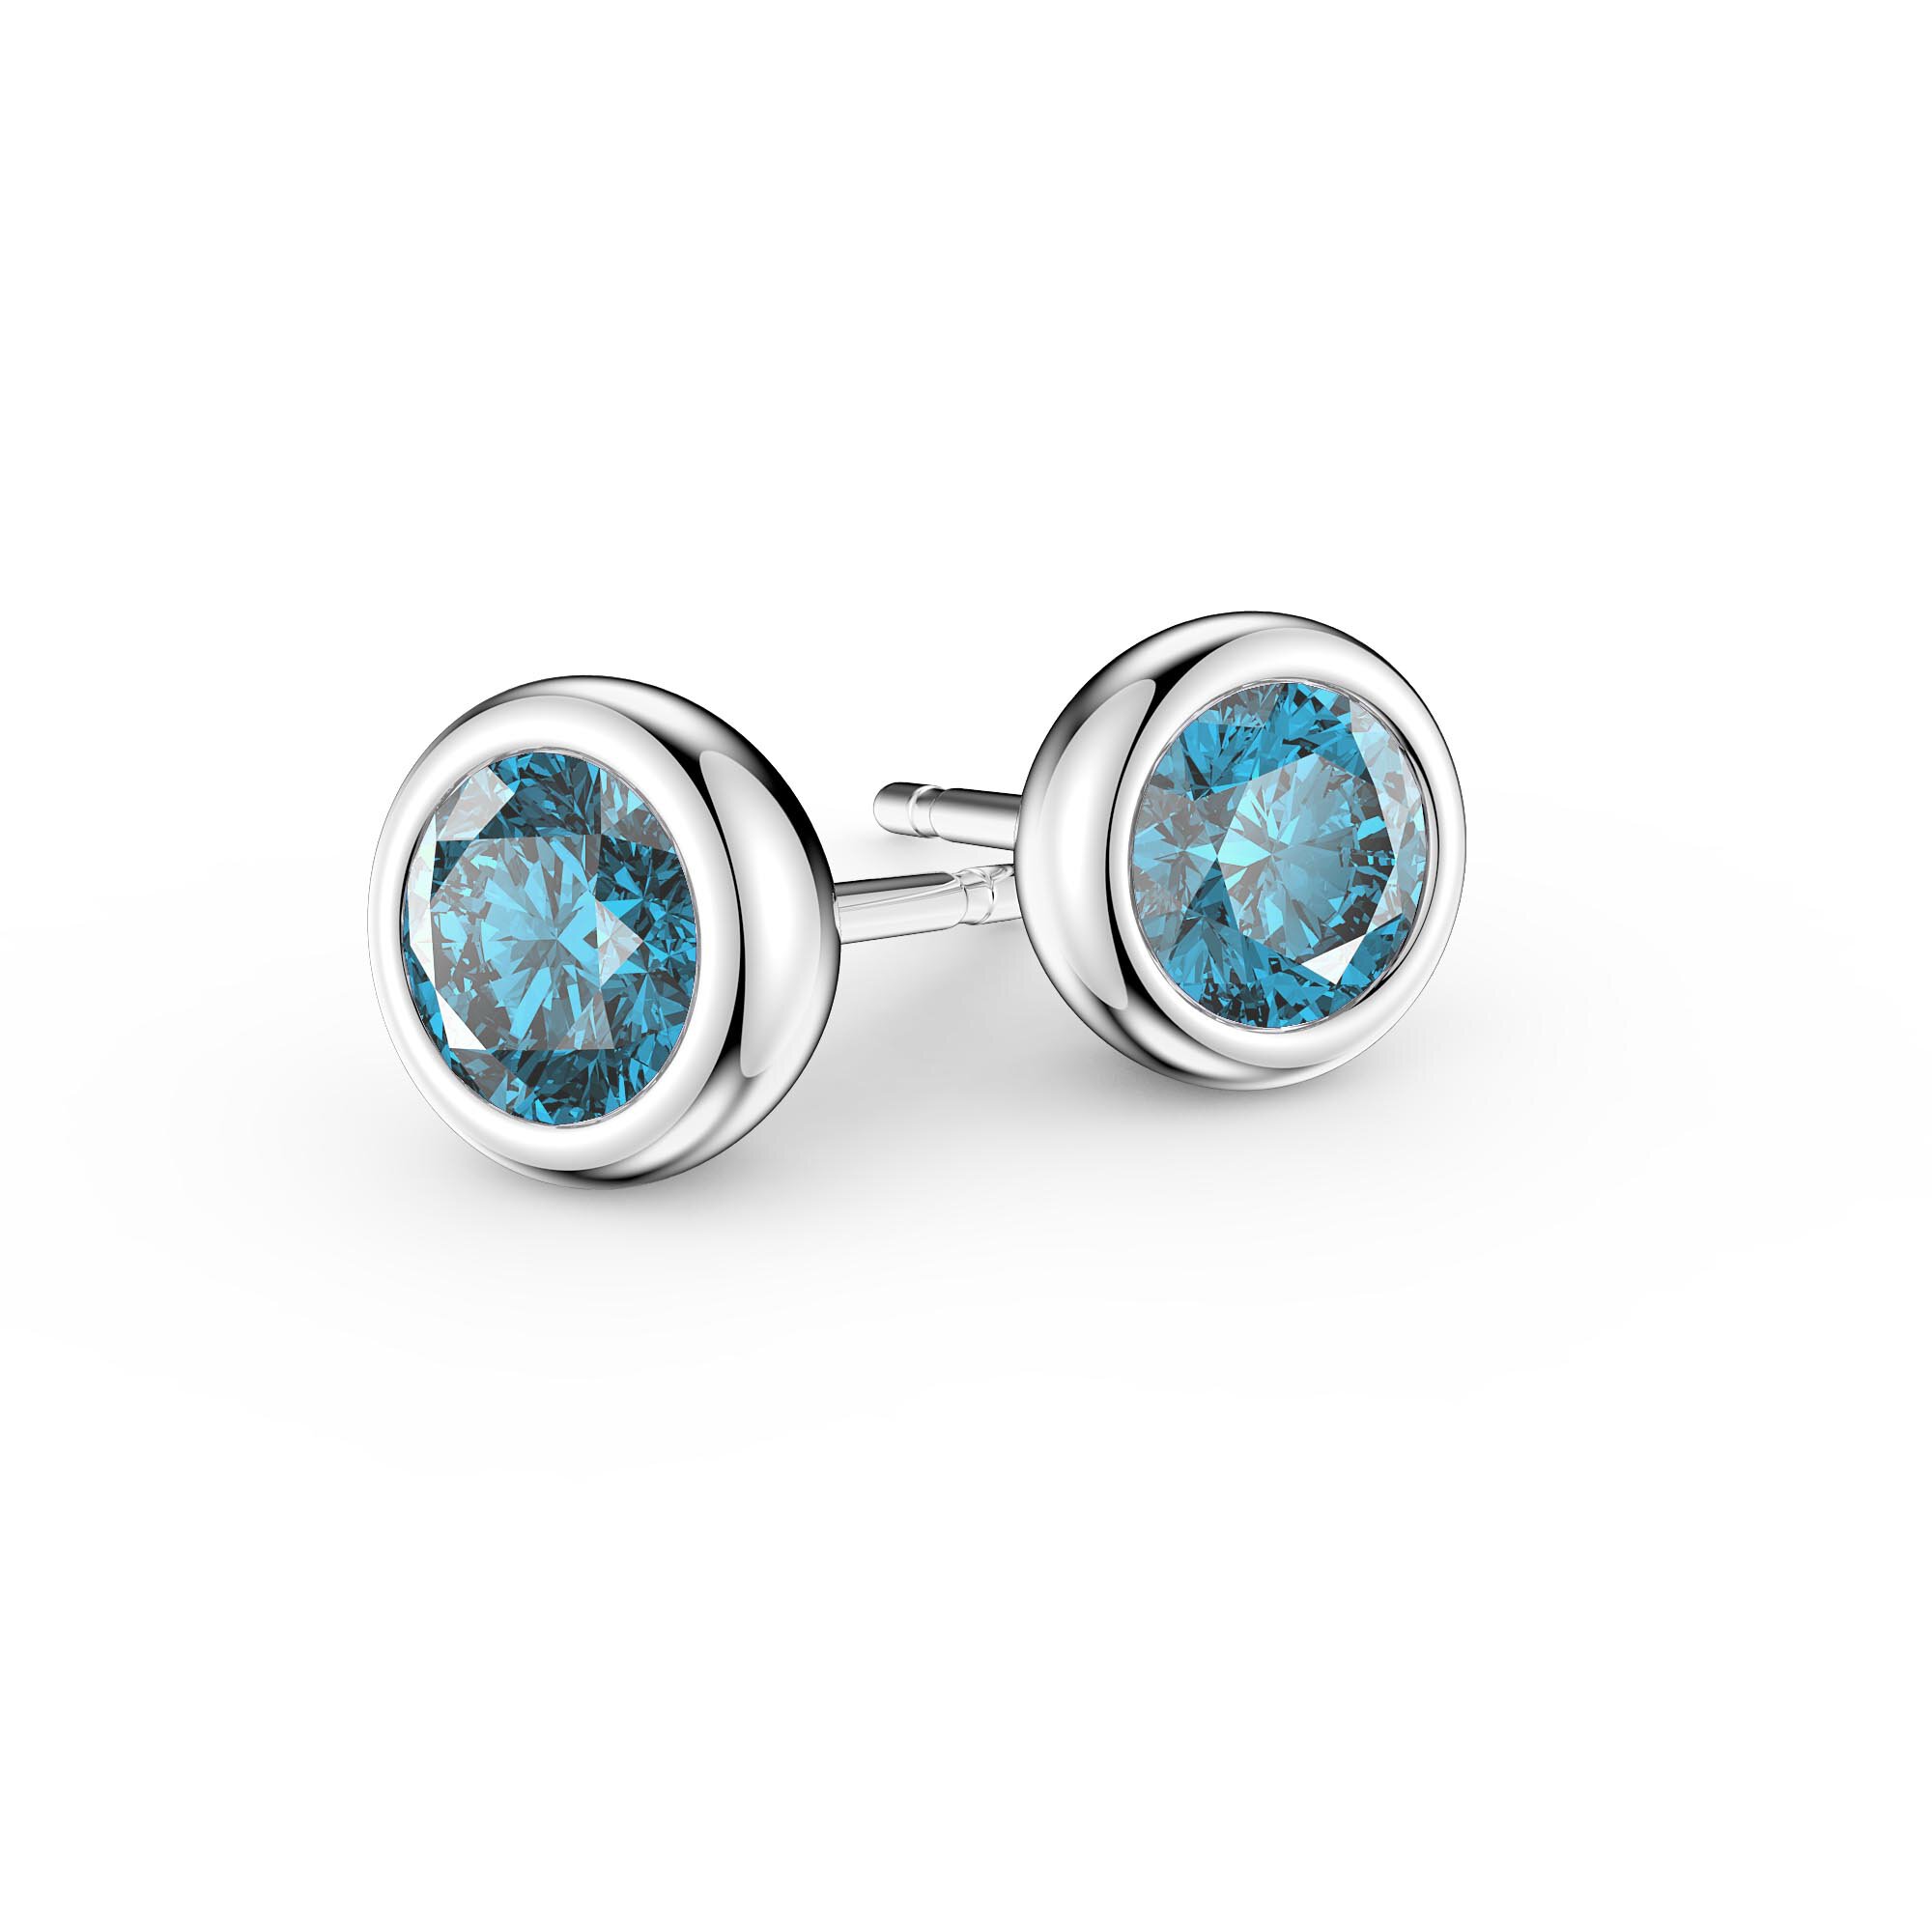 Swiss Blue Topaz Gemstone Earring Drop Dangle Style Earring 2.2 Long 925 Sterling Silver Plated Jewelry Handmade Silver Girl/'s Earring